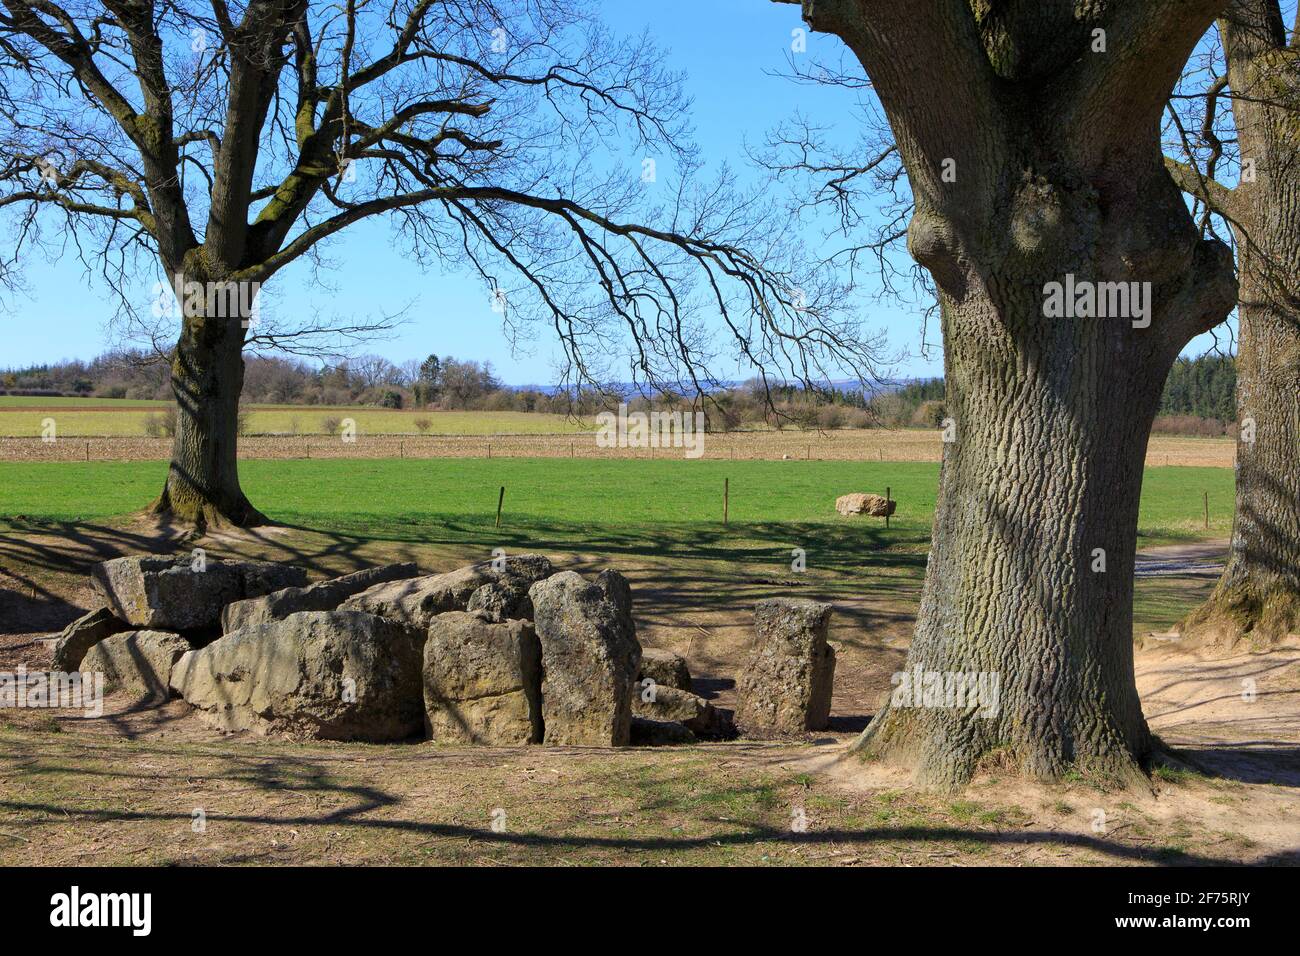 Le dolmen mémalthique de Weris II (Dolmen d'Oppagne) daté du 3000 av. J.-C. à Oppagne (Durbuy), Belgique Banque D'Images